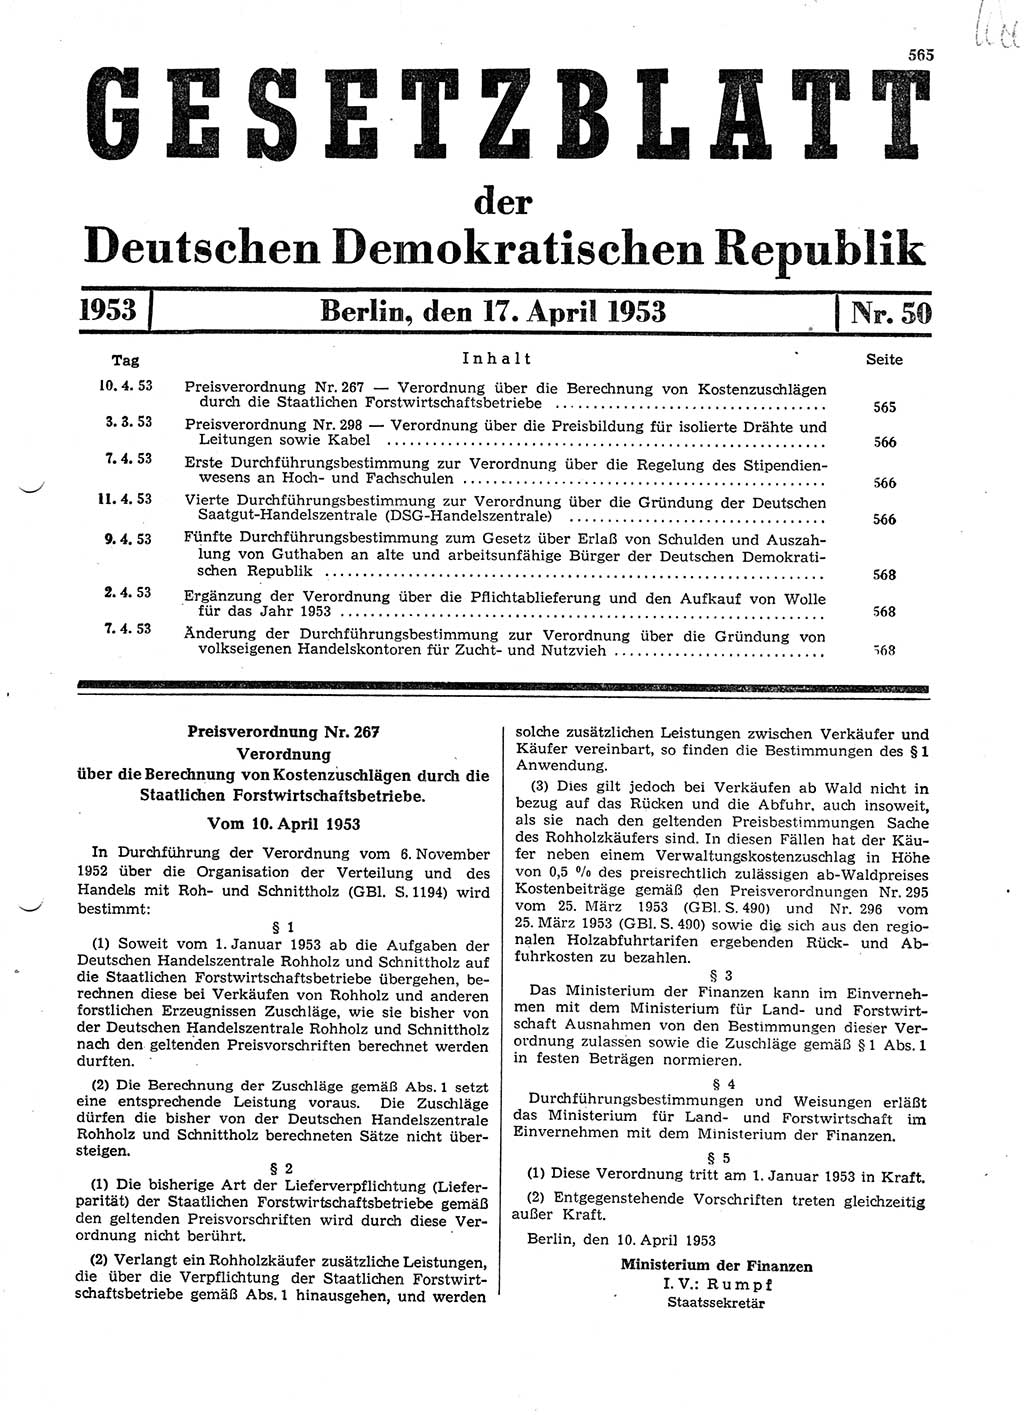 Gesetzblatt (GBl.) der Deutschen Demokratischen Republik (DDR) 1953, Seite 565 (GBl. DDR 1953, S. 565)